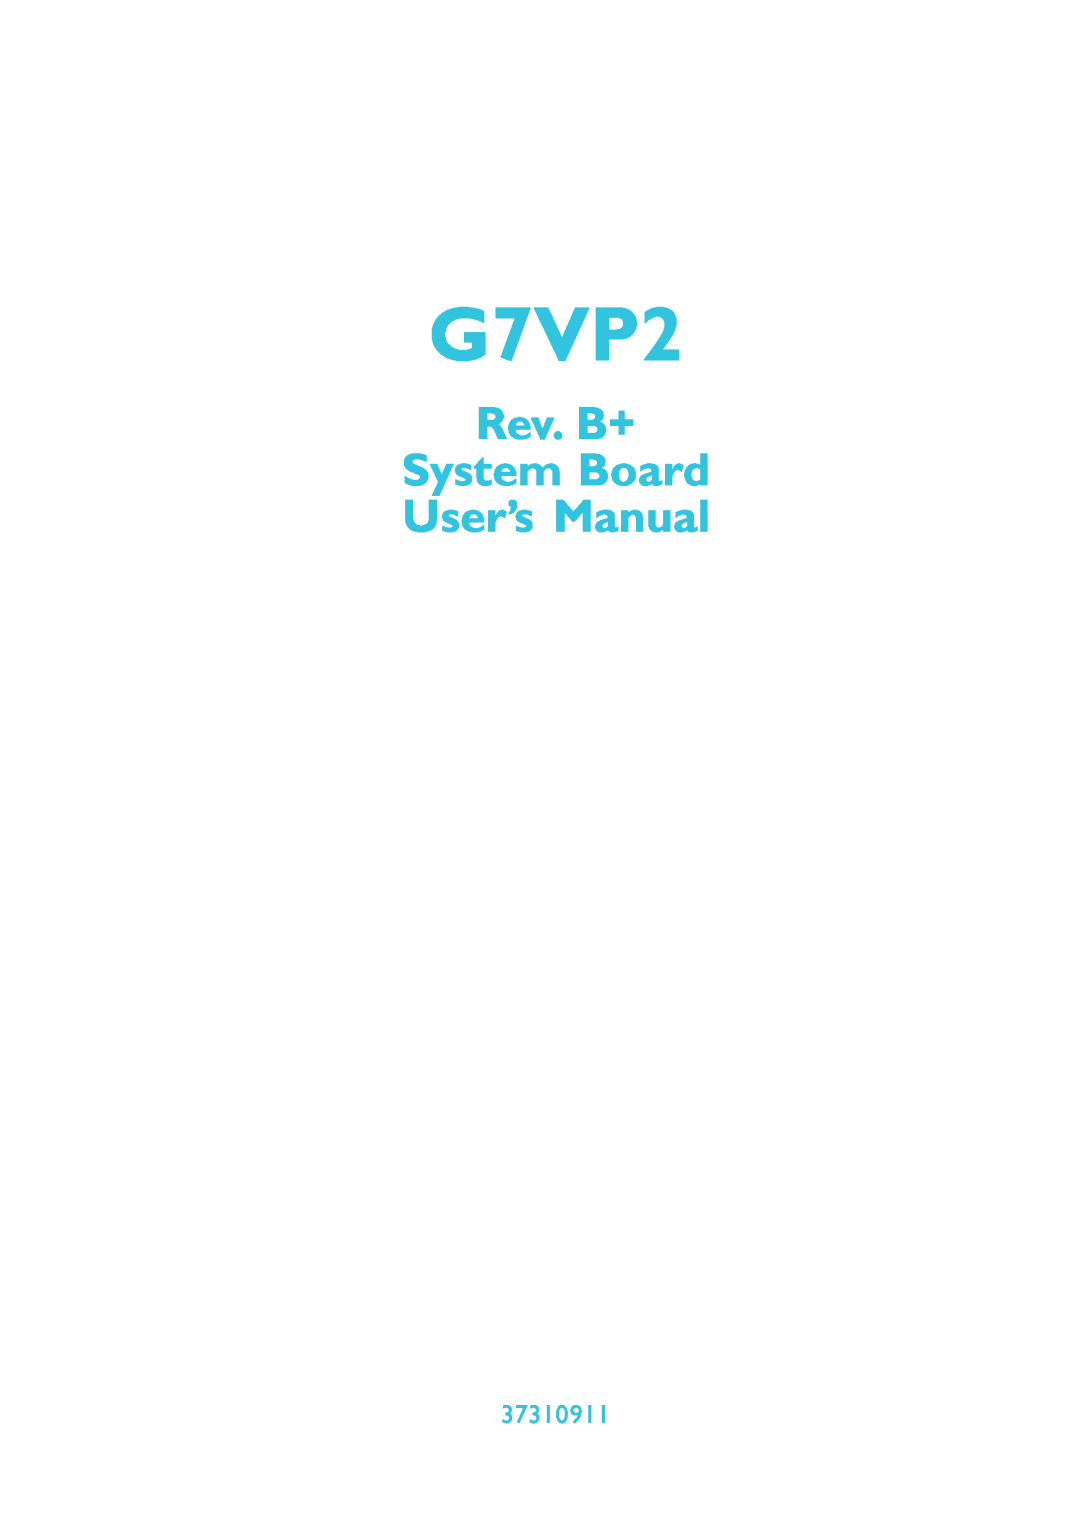 Microsoft G7VP2 manual 37310911, Rev. B+ System Board User’s Manual 